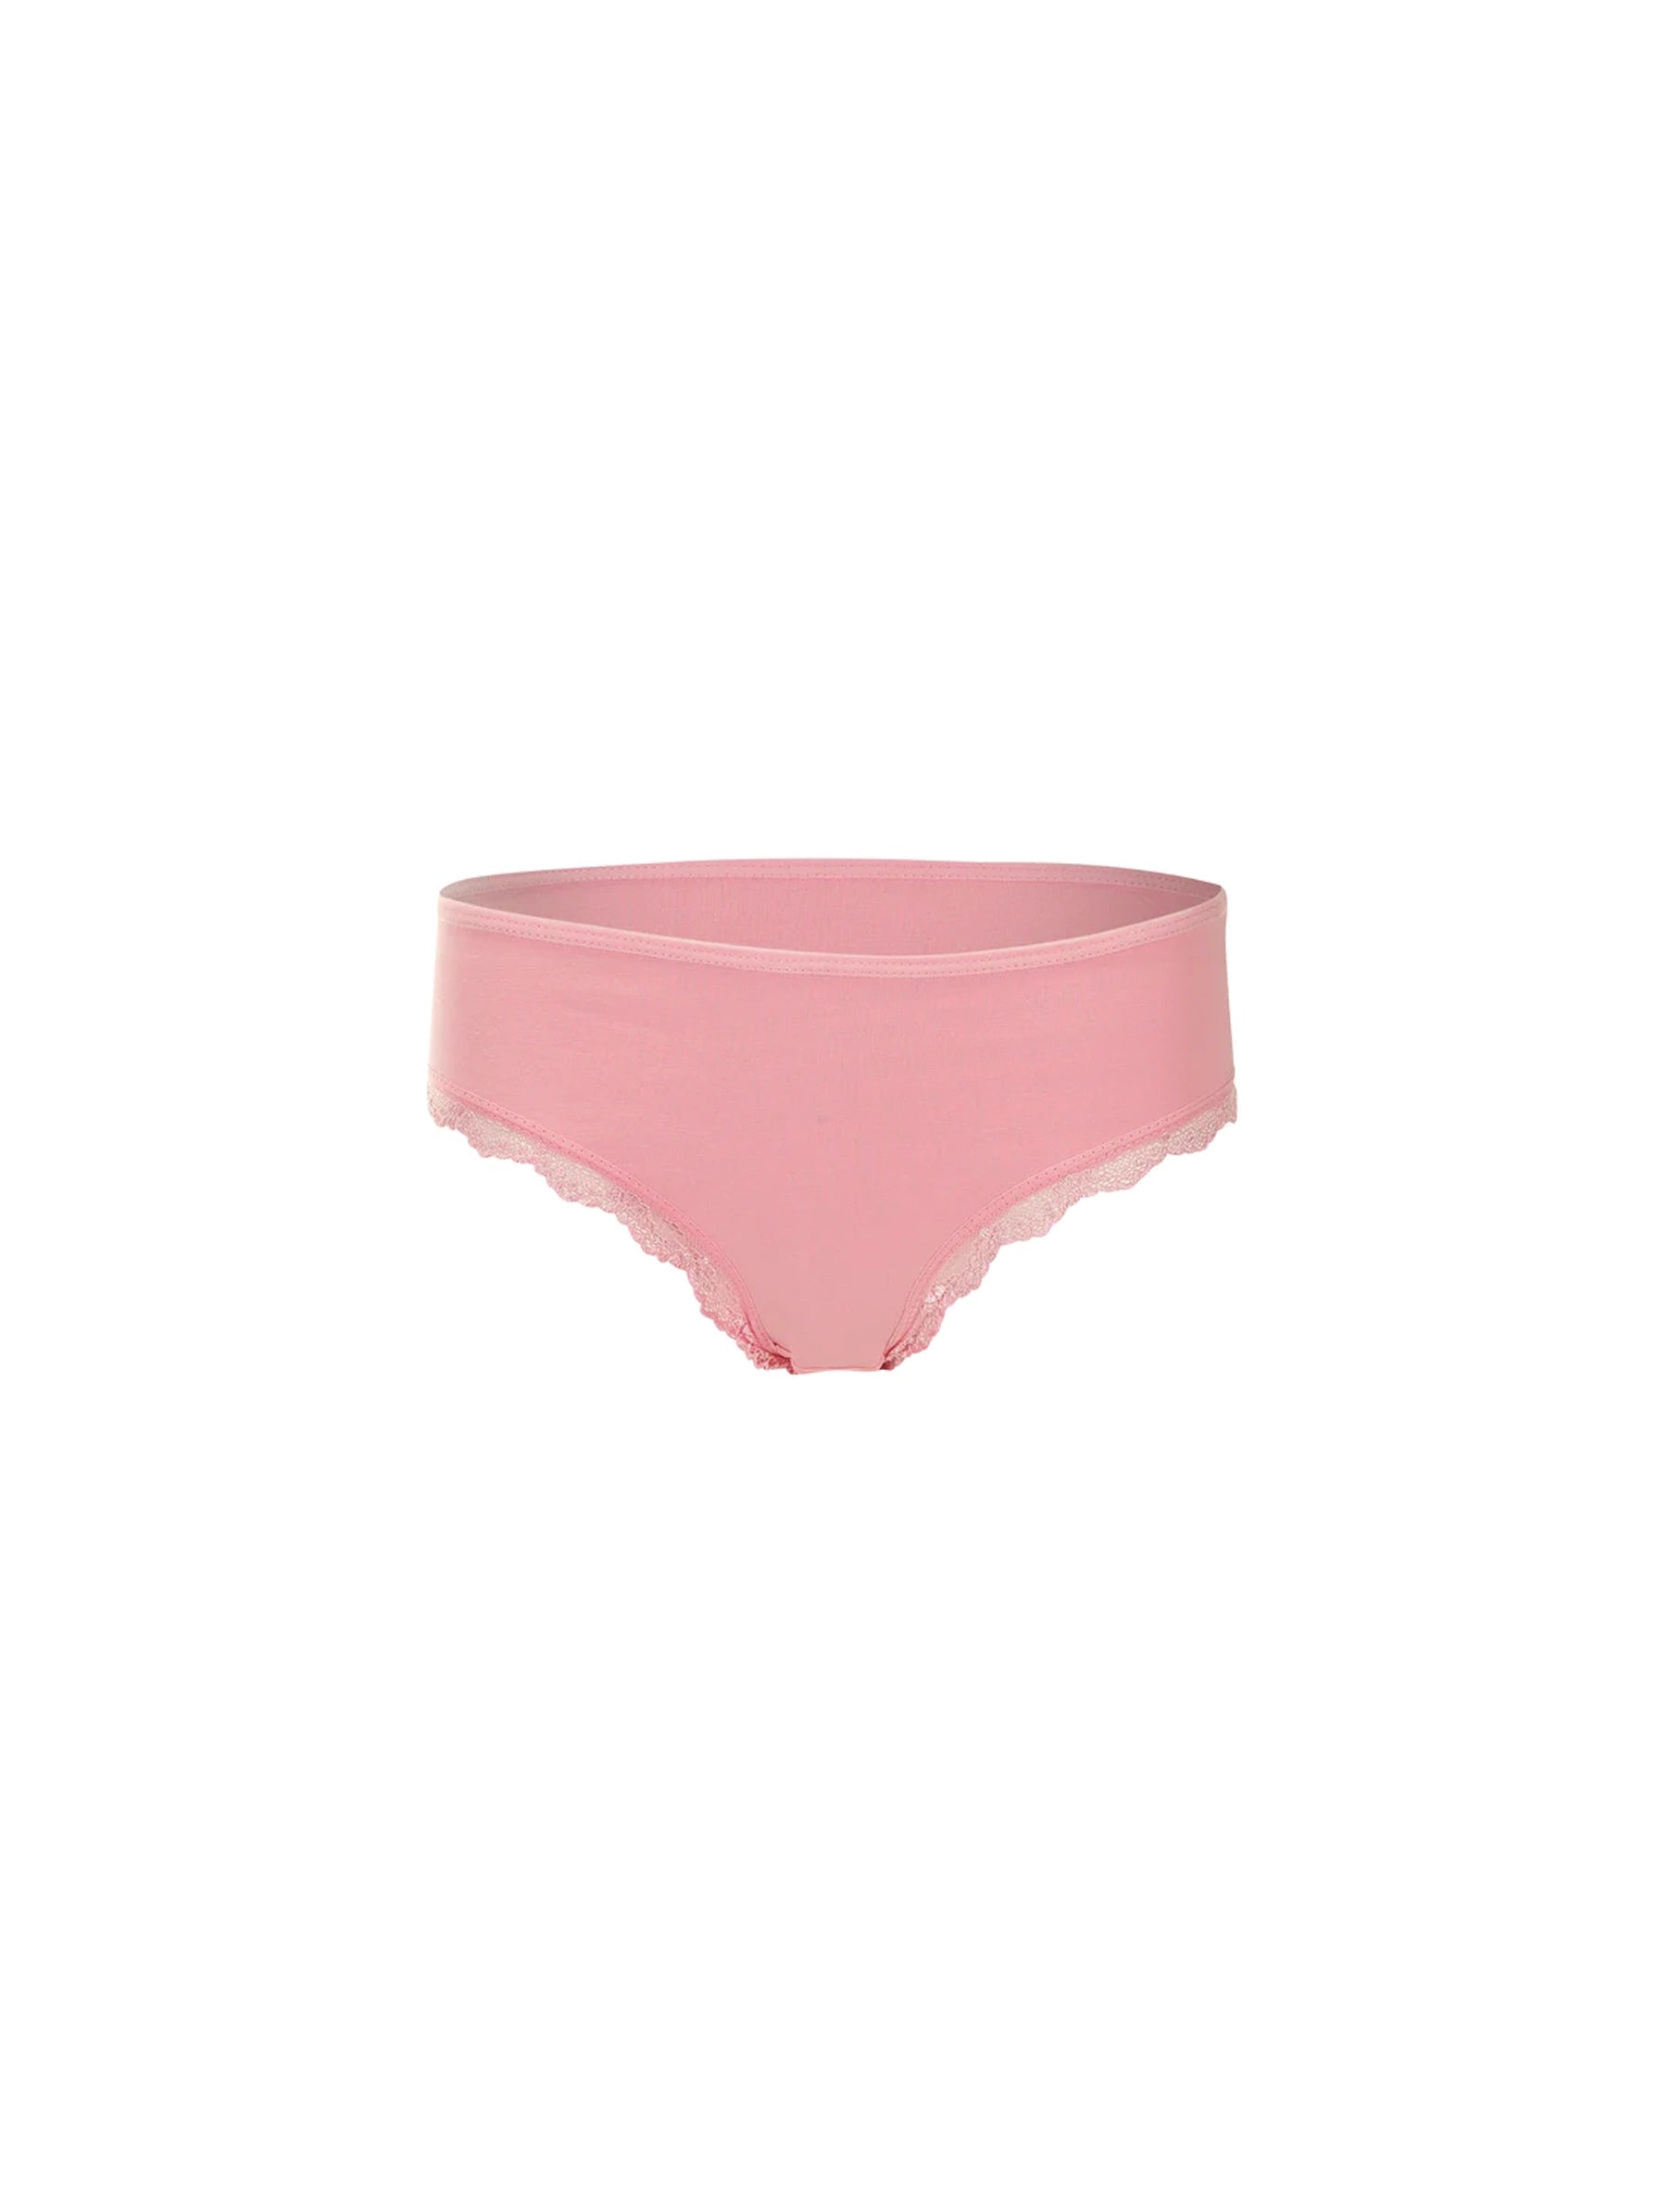 Pink Underwear.